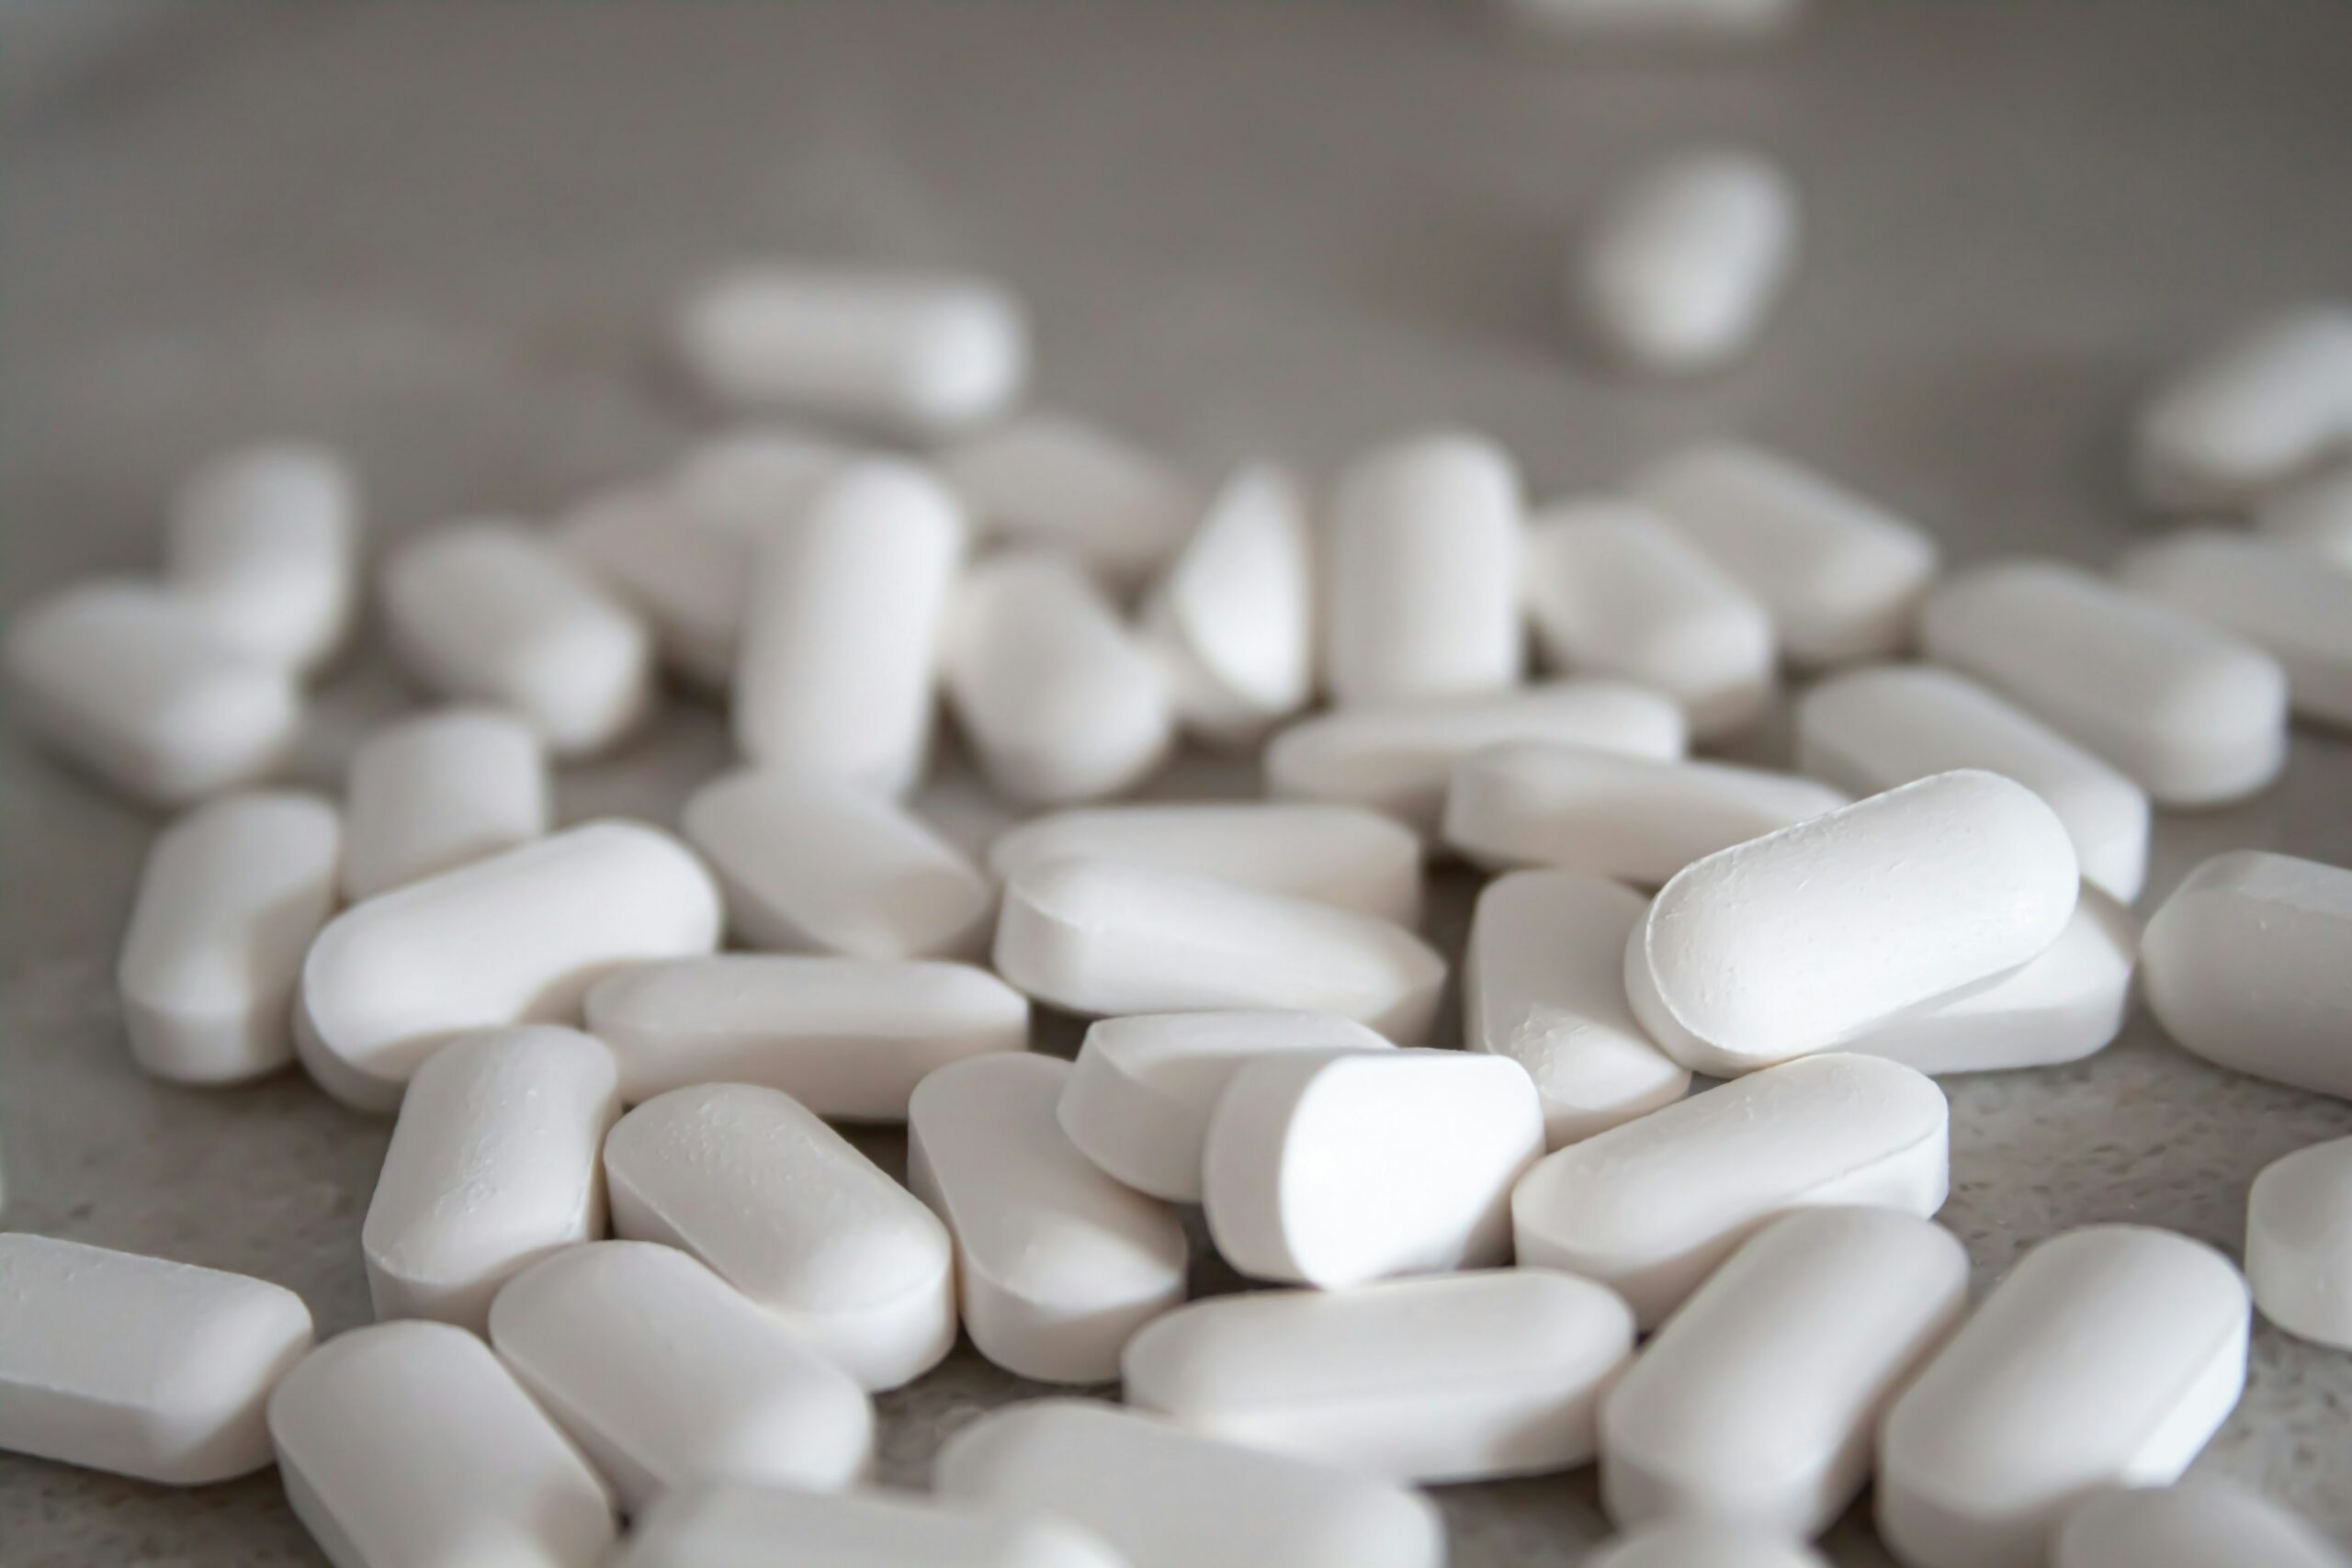 Understanding Prescription Drug Abuse